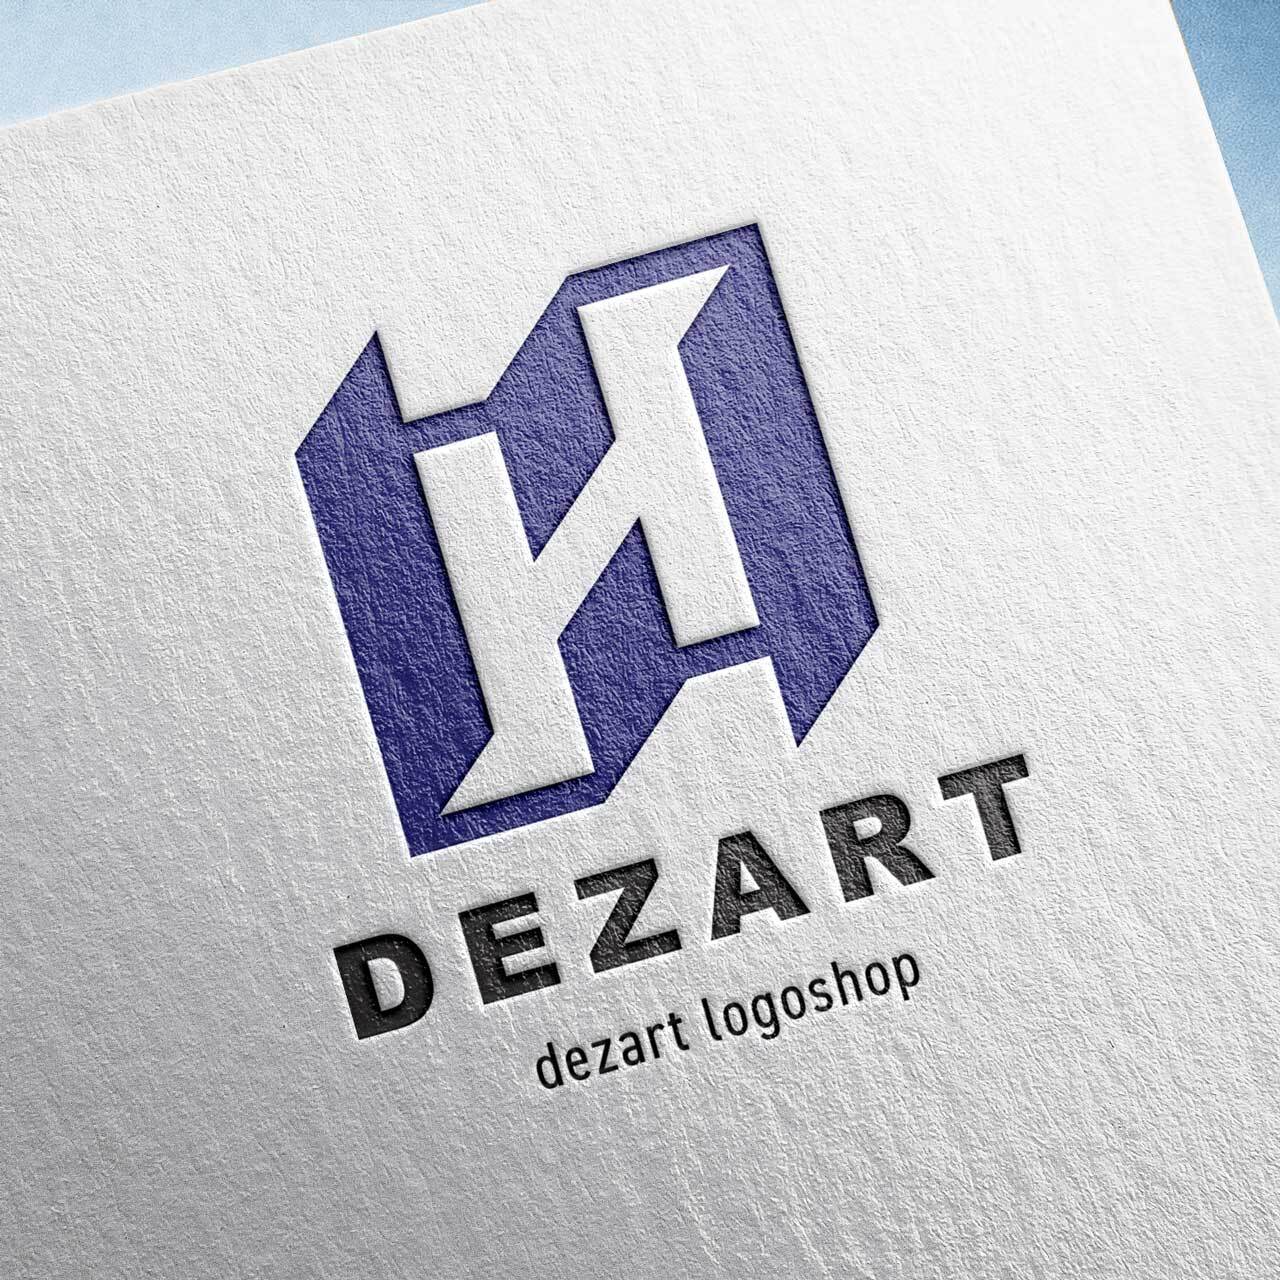 Dezart1/doors